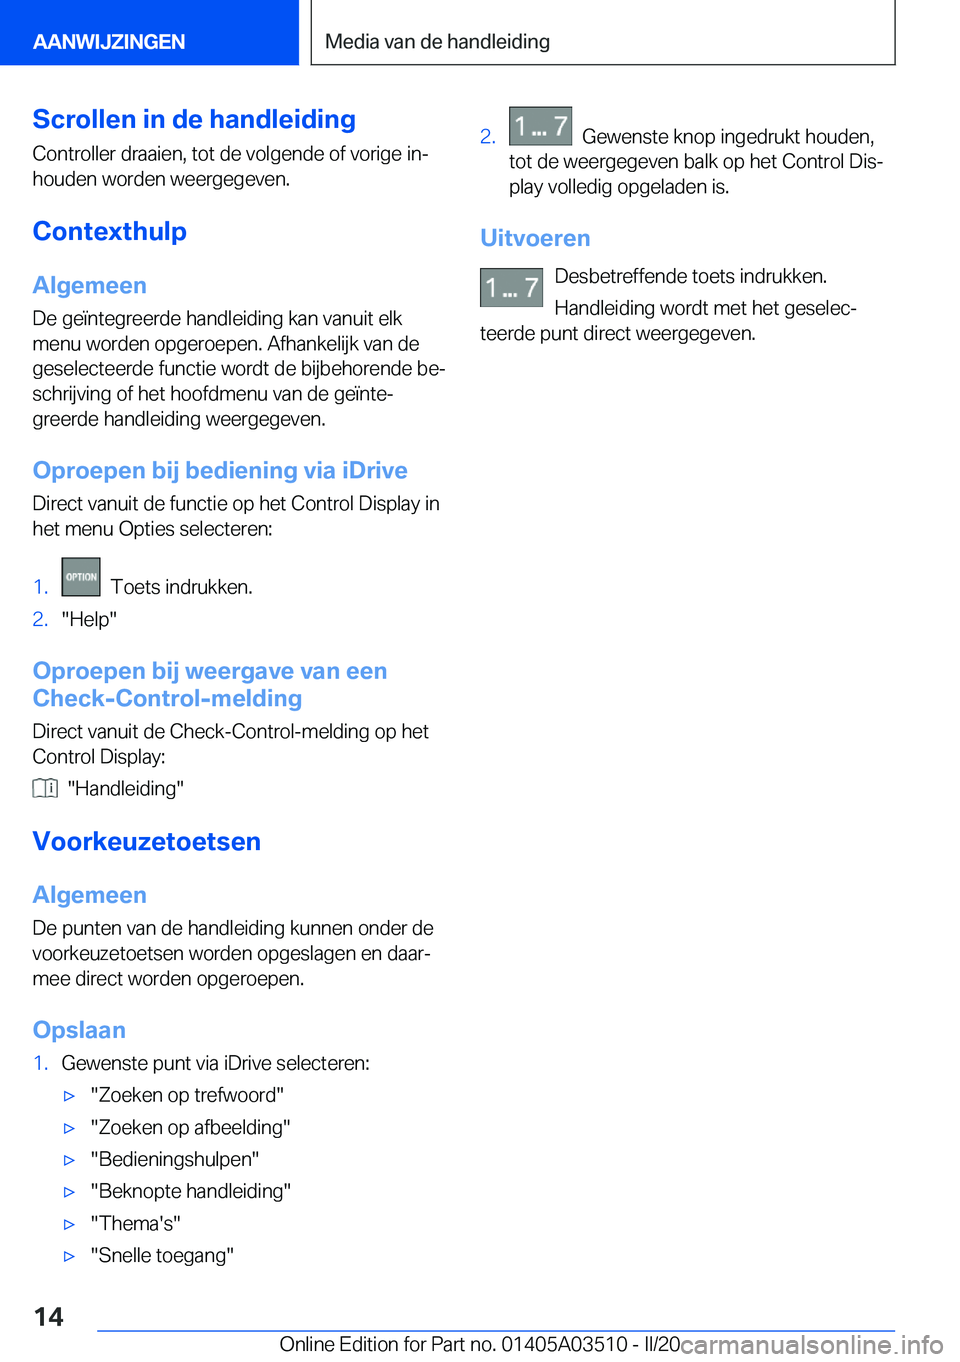 BMW X3 2020  Instructieboekjes (in Dutch) �S�c�r�o�l�l�e�n��i�n��d�e��h�a�n�d�l�e�i�d�i�n�g
�C�o�n�t�r�o�l�l�e�r��d�r�a�a�i�e�n�,��t�o�t��d�e��v�o�l�g�e�n�d�e��o�f��v�o�r�i�g�e��i�nj
�h�o�u�d�e�n��w�o�r�d�e�n��w�e�e�r�g�e�g�e�v�e